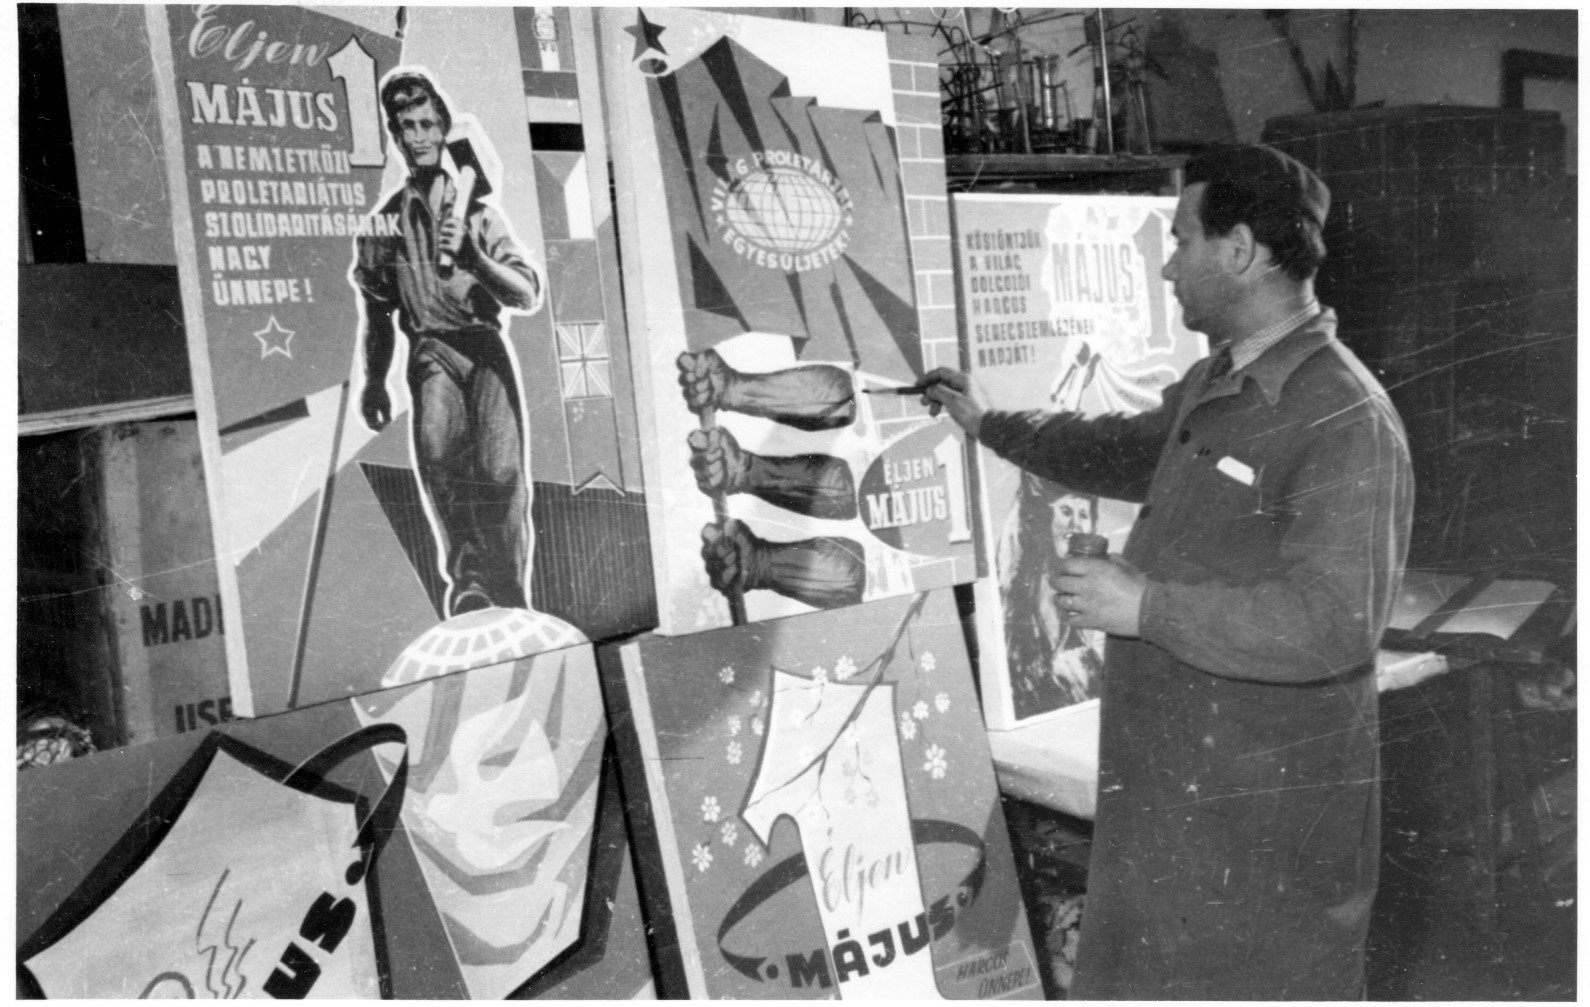 A Somogy megyei Iparcikk Kiskereskedelmi Vállalat dekorációs részlegének Kiss Elek az utolsó ecsetvonásokat végzi az egyik ünnepi plakáton (Rippl-Rónai Múzeum CC BY-NC-SA)